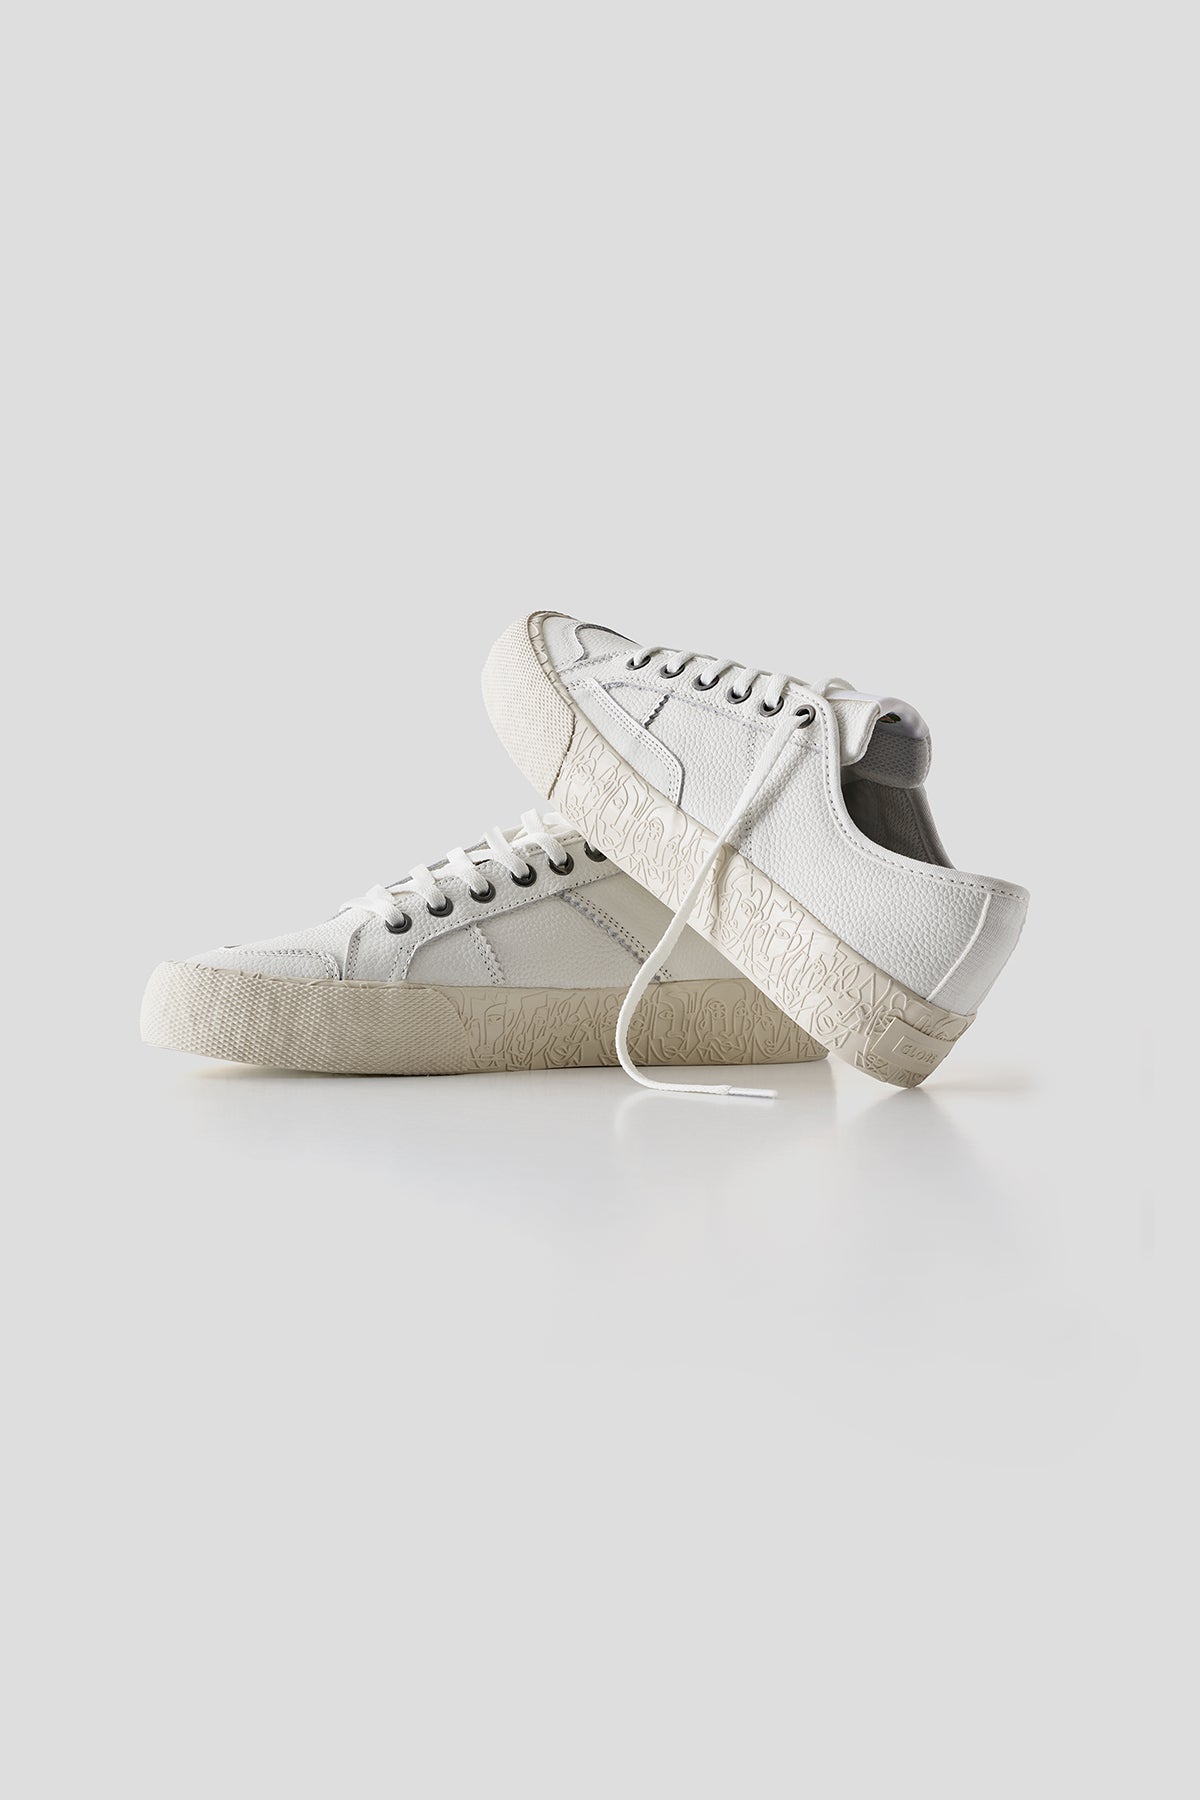 Surplus - White/Montano - Skate Shoes